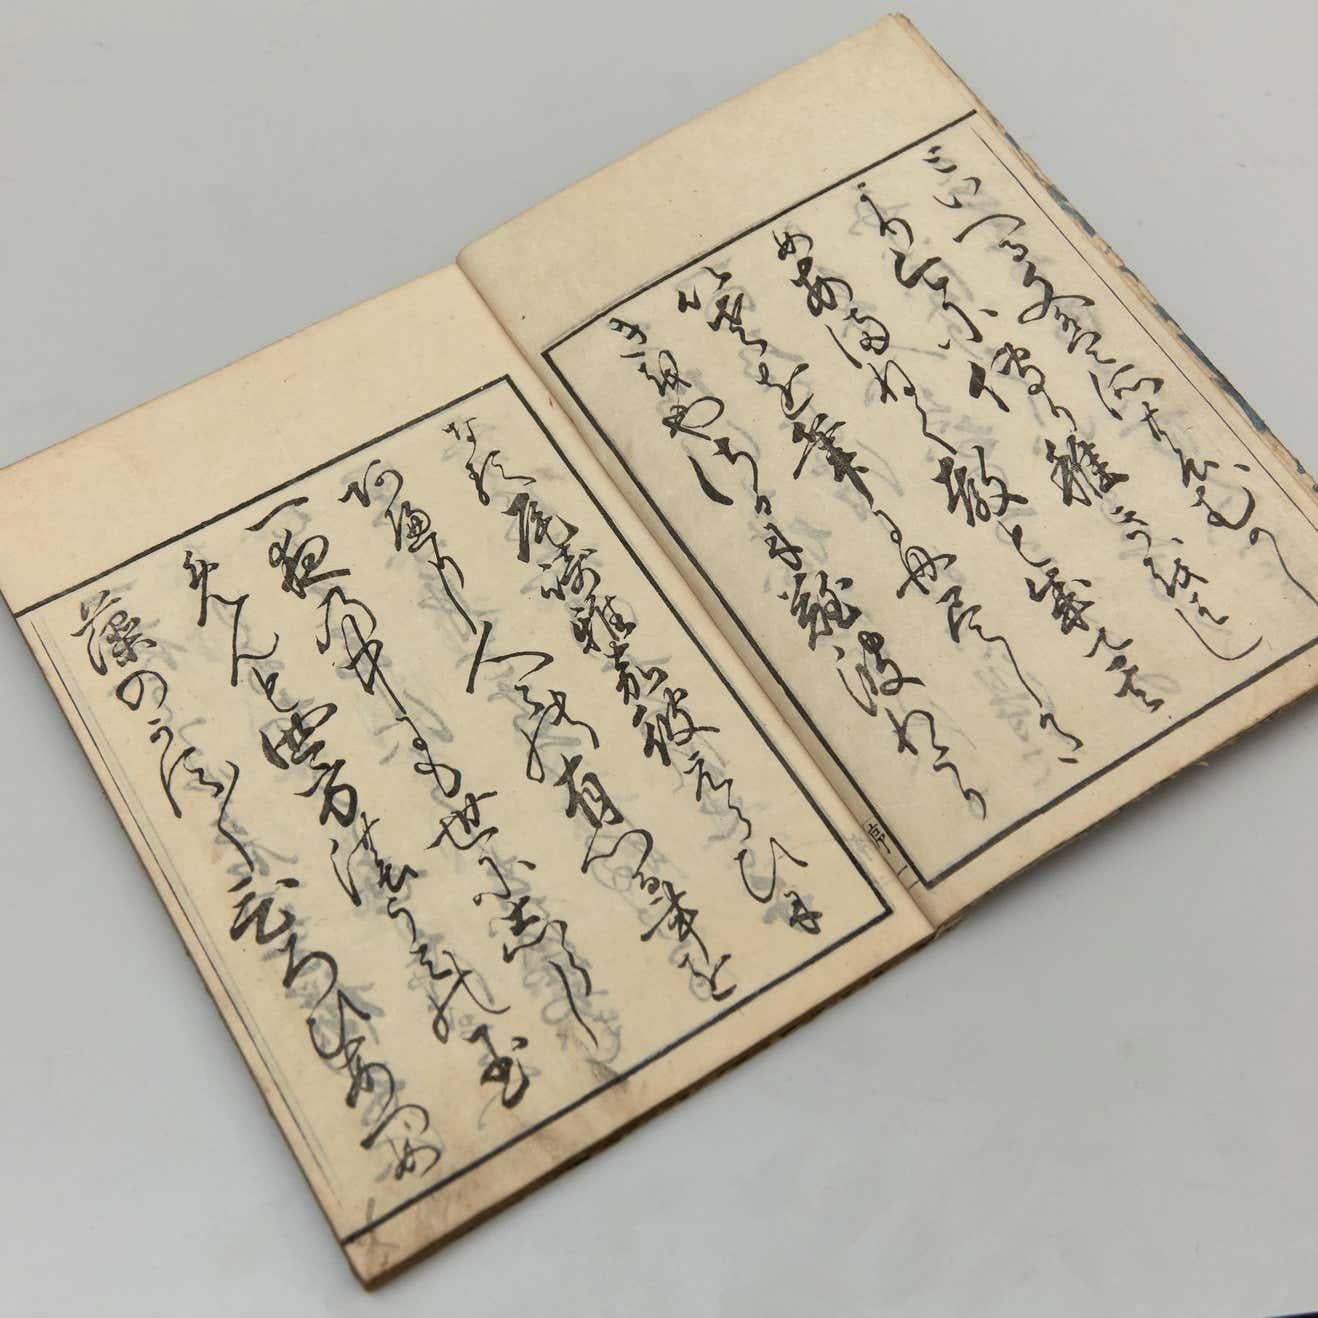 Antikes japanisches Oraimono-Buch Edo-Zeit, um 1833
Farbholzschnitt-Buch

Abmessungen des Buches: 260 mm x 180 mm

Es gibt Schäden, weil es antike Artikel ist, wie wir auf den Fotos zeigen.